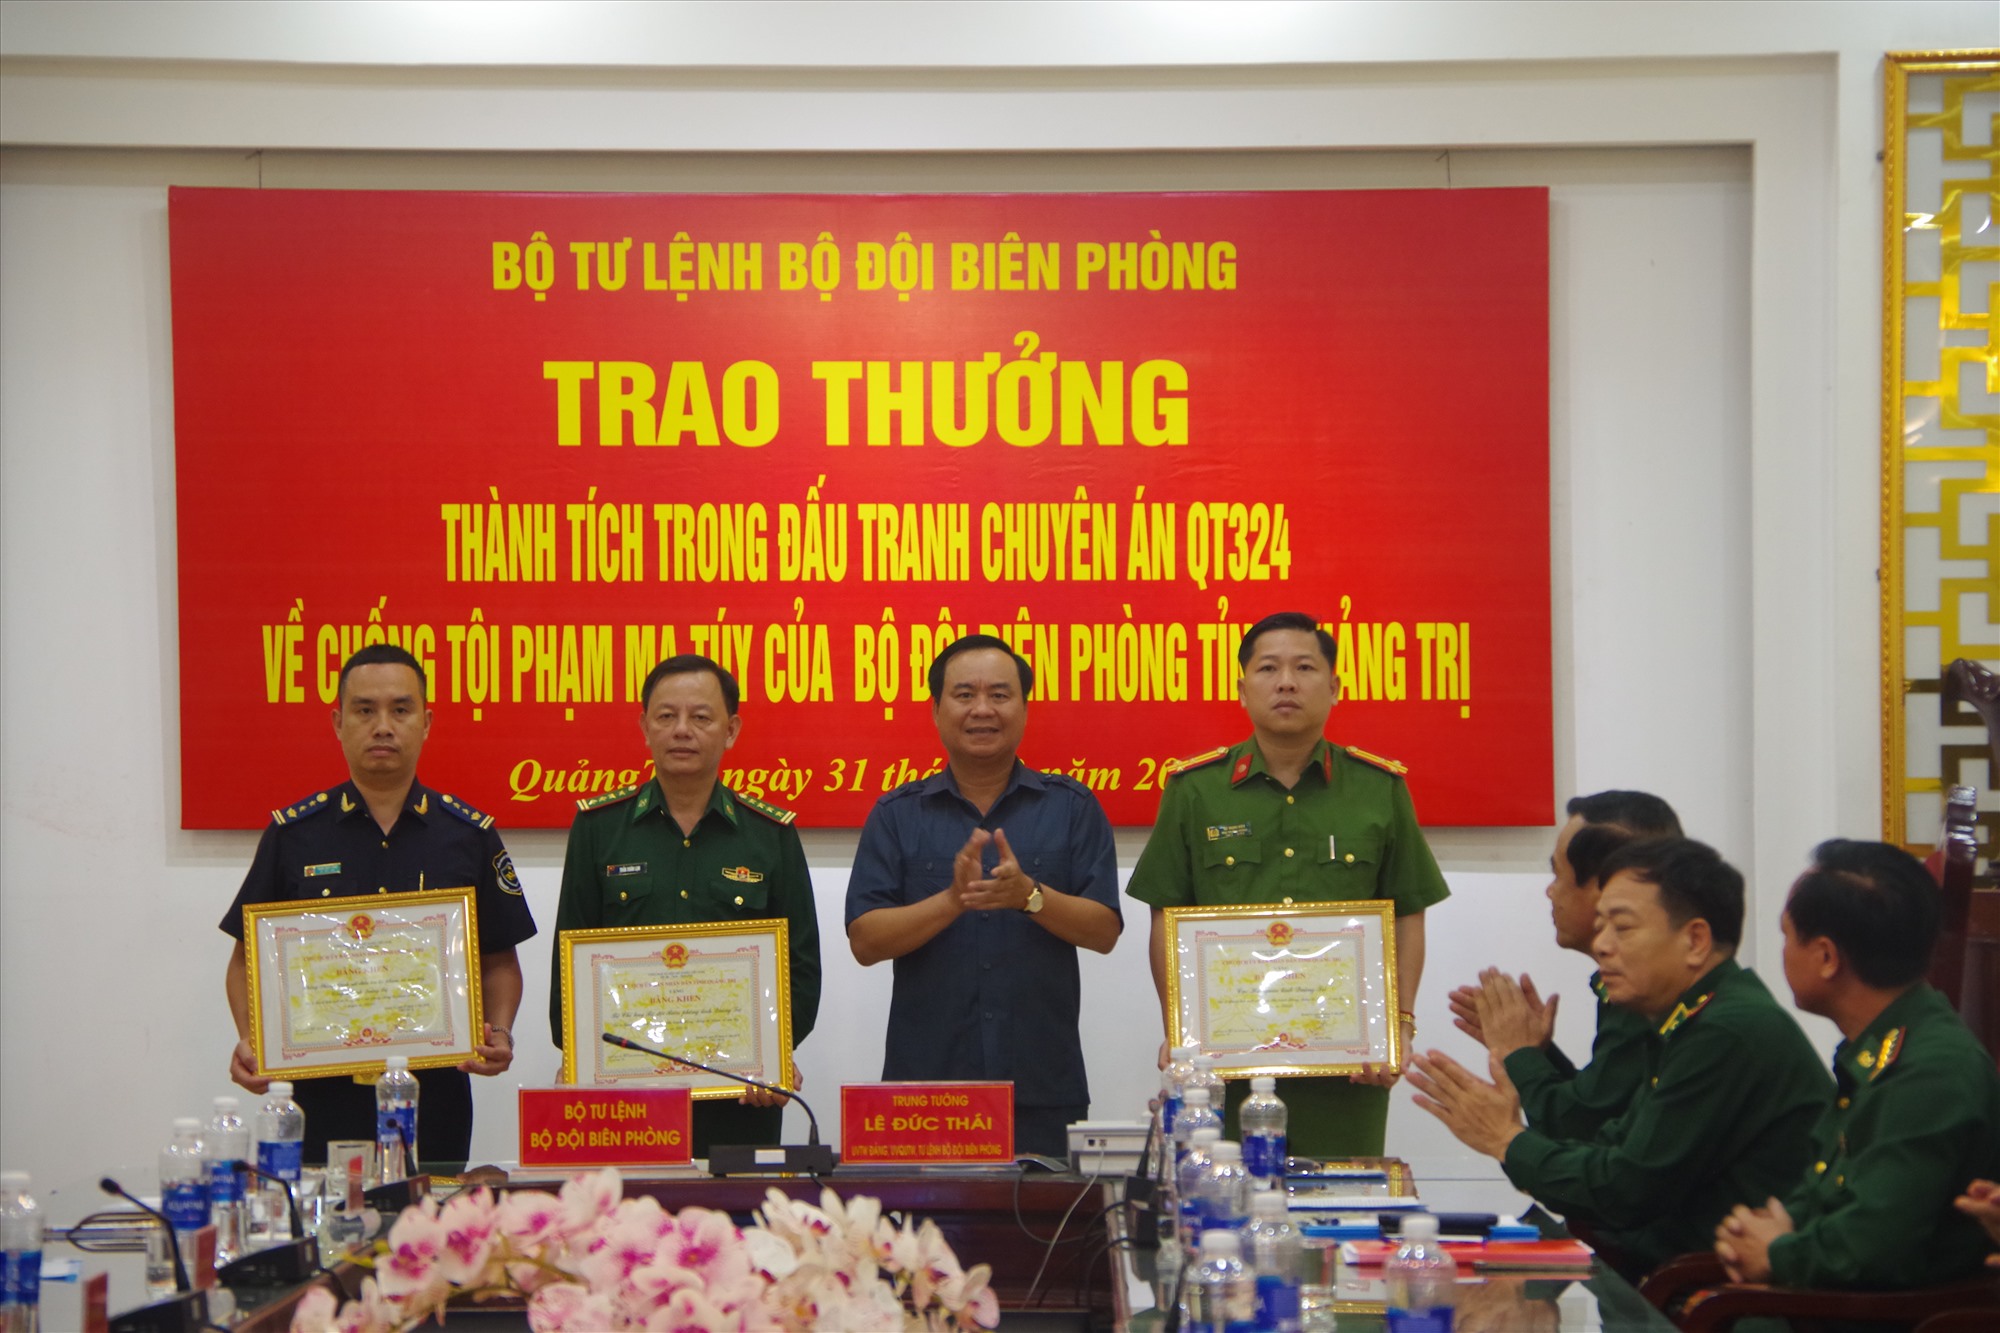 Chủ tịch UBND tỉnh Võ Văn Hưng tặng bằng khen cho các lực lượng tham gia Chuyên án QT 324 - Ảnh: P.T